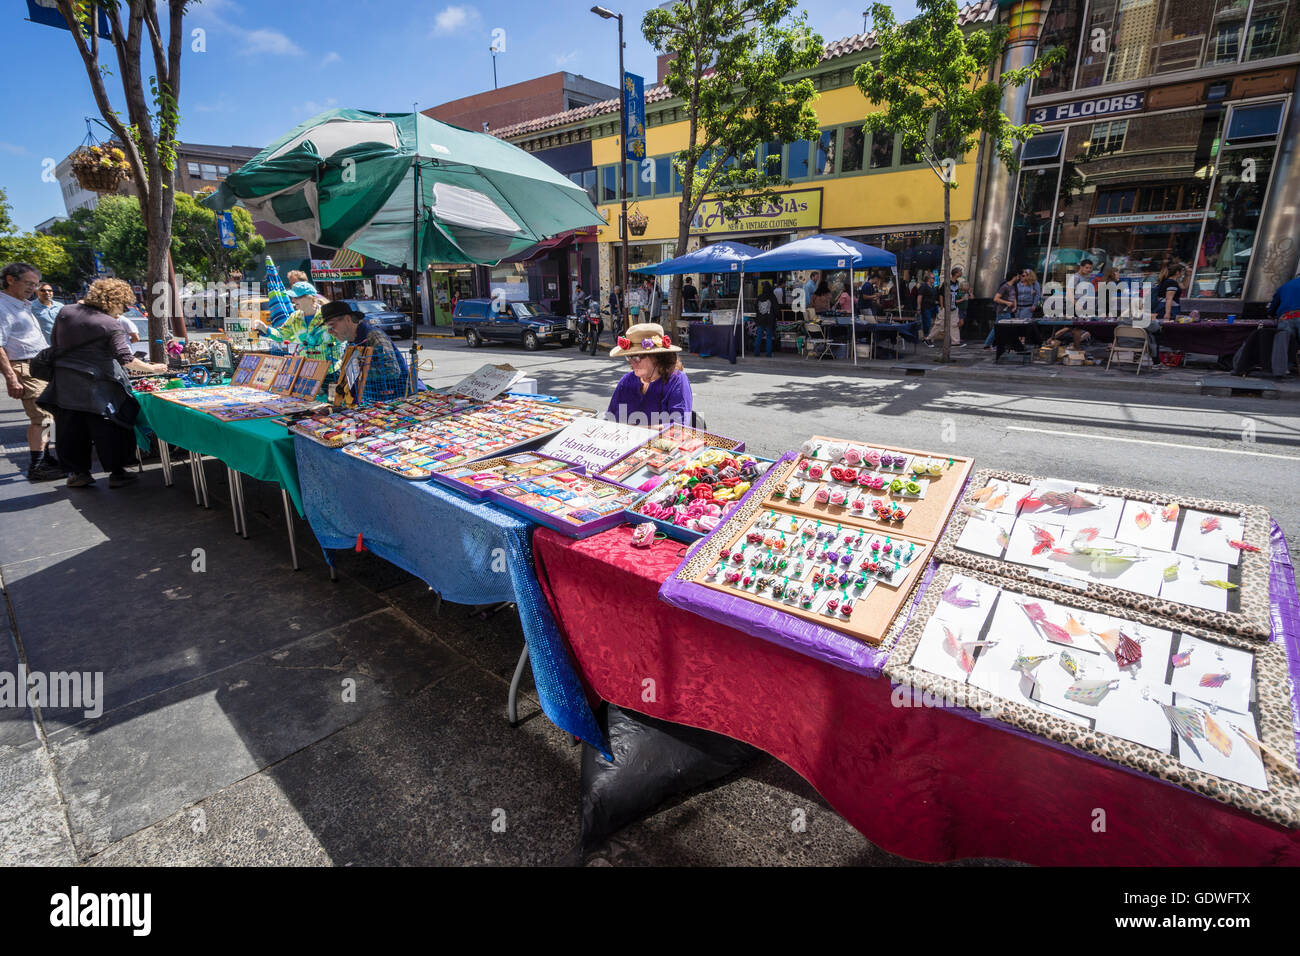 Les vendeurs de rue vendant de l'artisanat sur les tables le long de Telegraph Hill sur l'Université de Californie à Berkeley College campus Banque D'Images